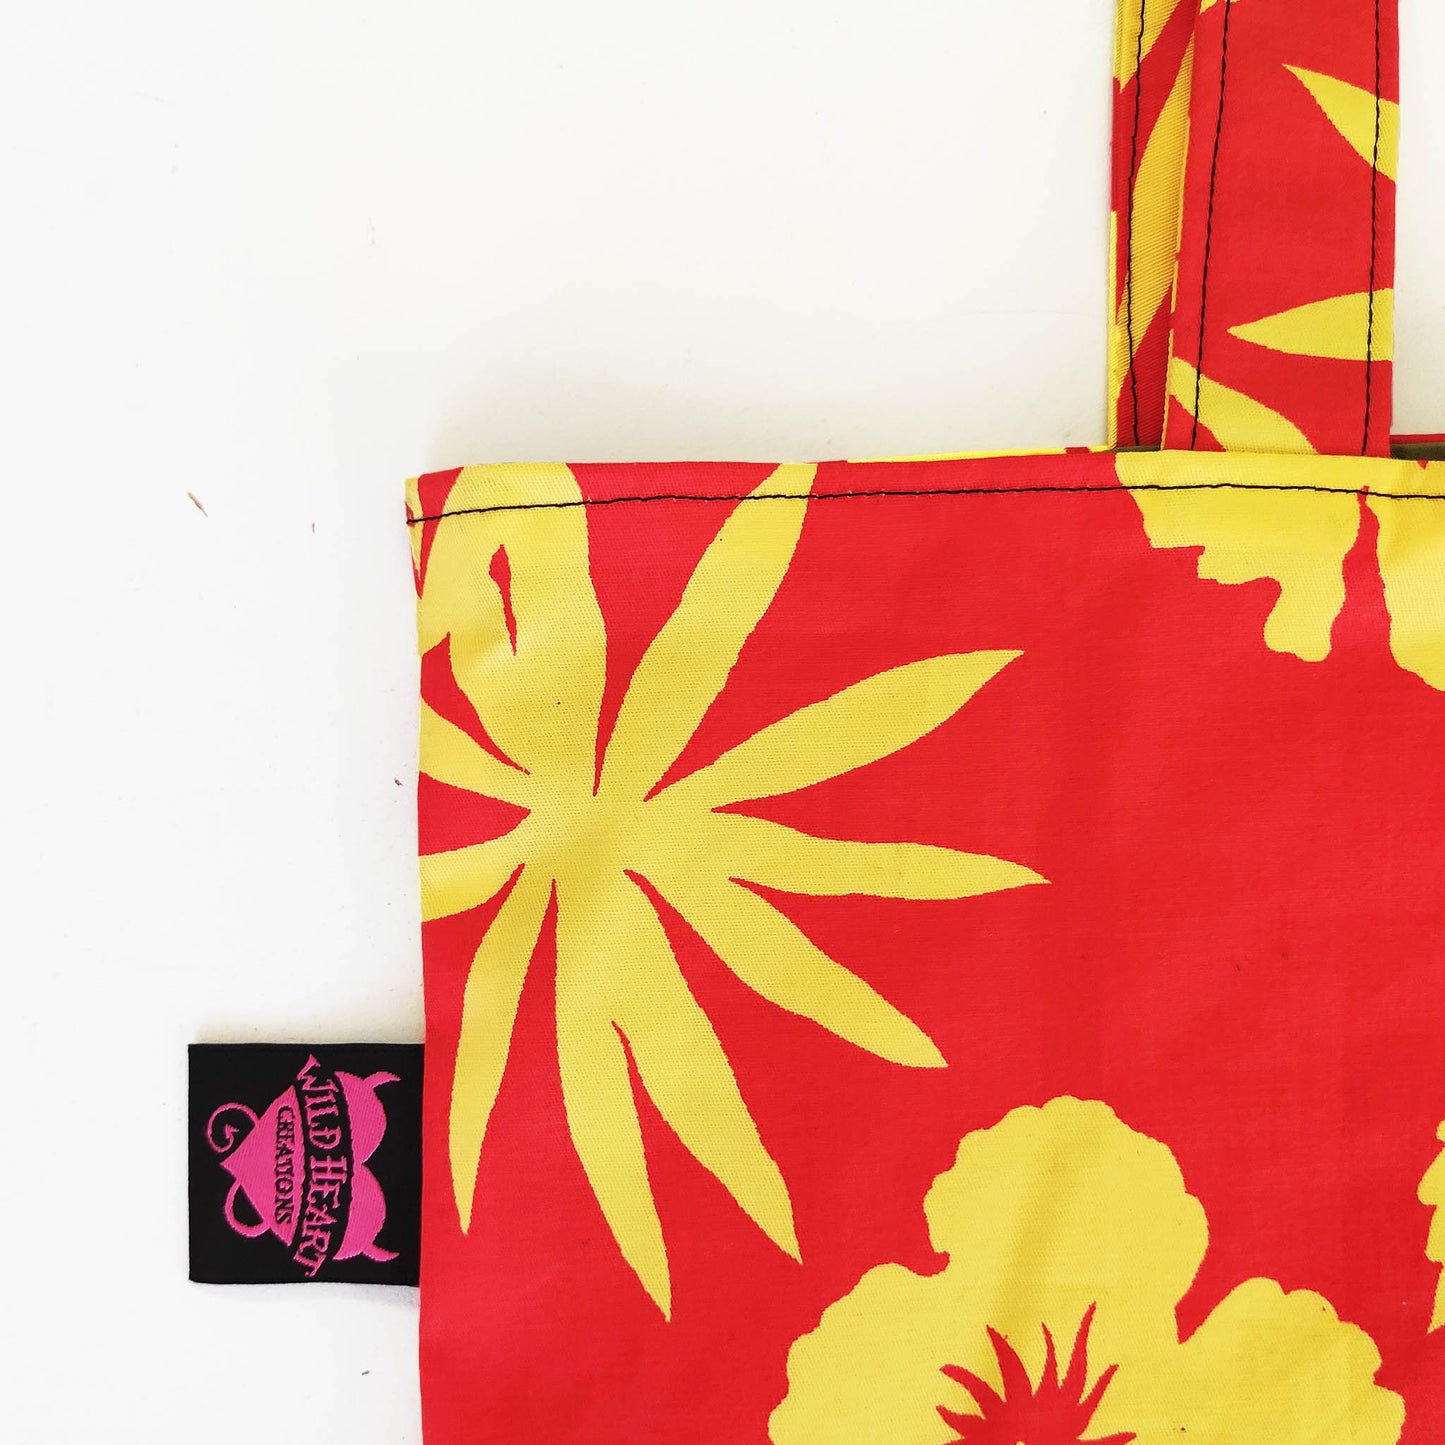 Die handgefertigte Tote Tasche hat ein lebendiges Hibiskusblüten-Motiv welches sich über die gesamte Oberfläche der Tasche erstreckt. Die leuchtenden Gelb- und Orangetöne erzeugen einen strahlenden Kontrast und verleihen der Tasche eine fröhliche und sommerliche Ausstrahlung. 